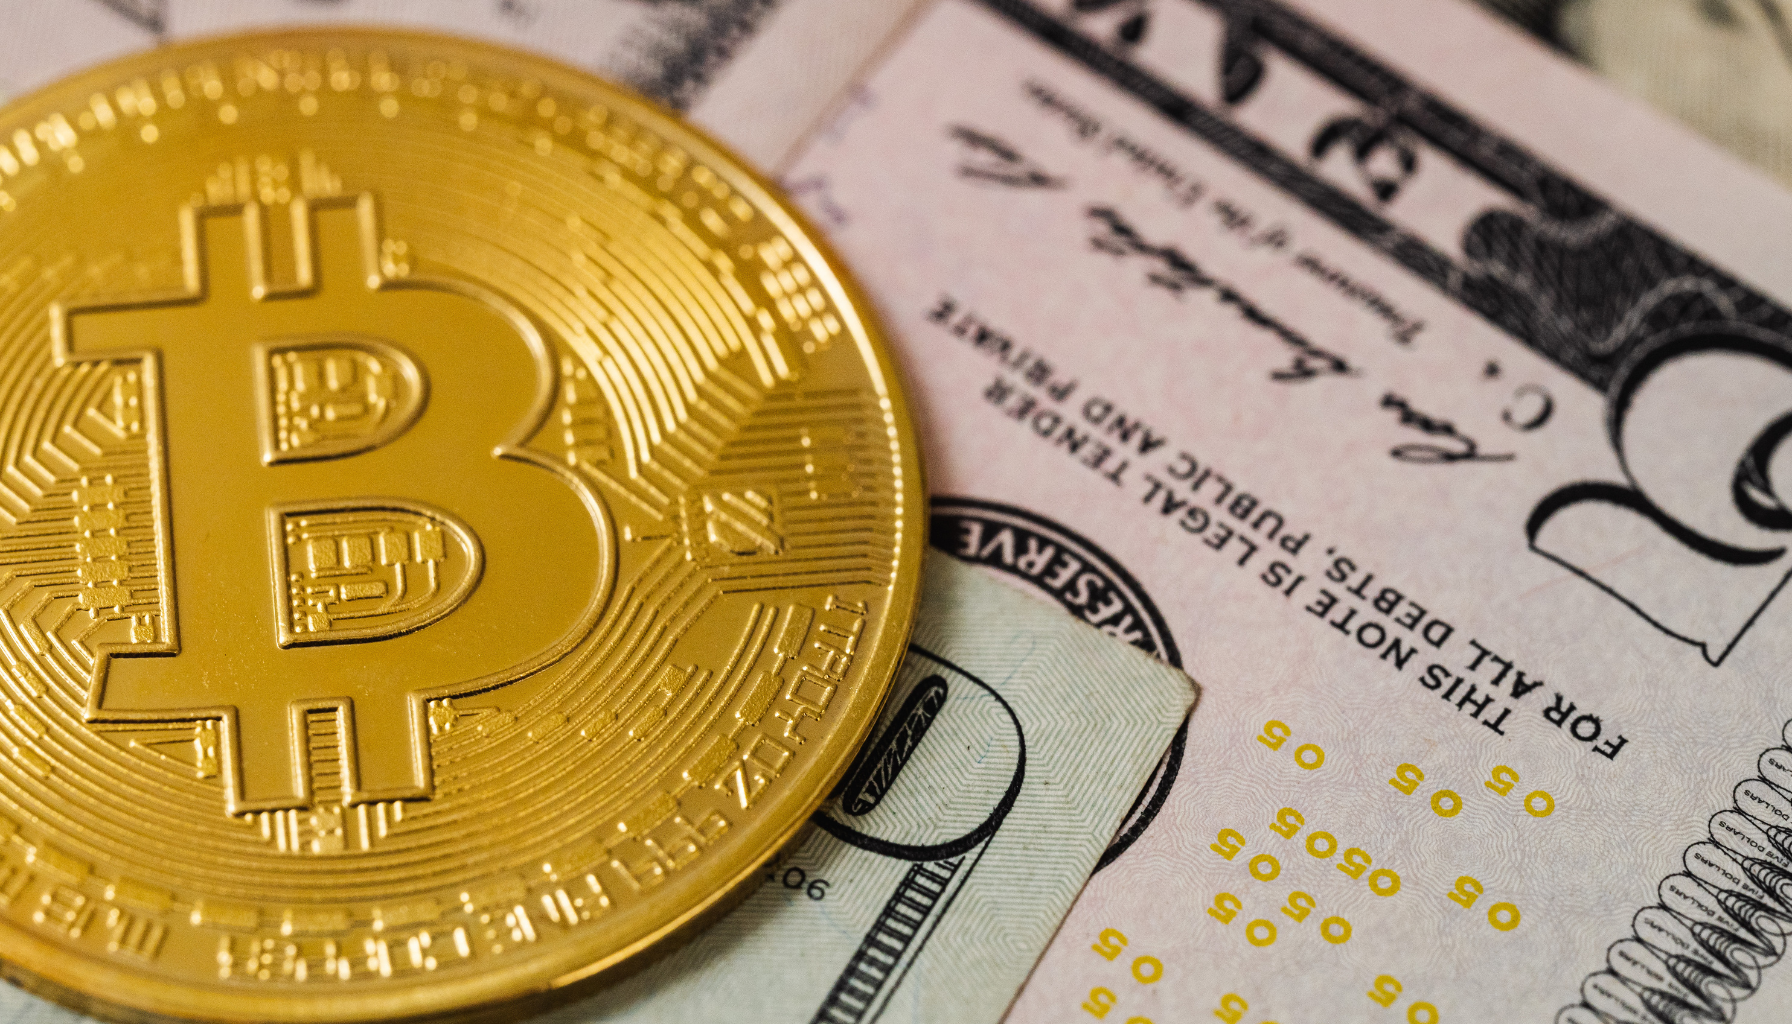 O Bitcoin é Confiável? Conheça os Perigos Associados a Essa Criptomoeda